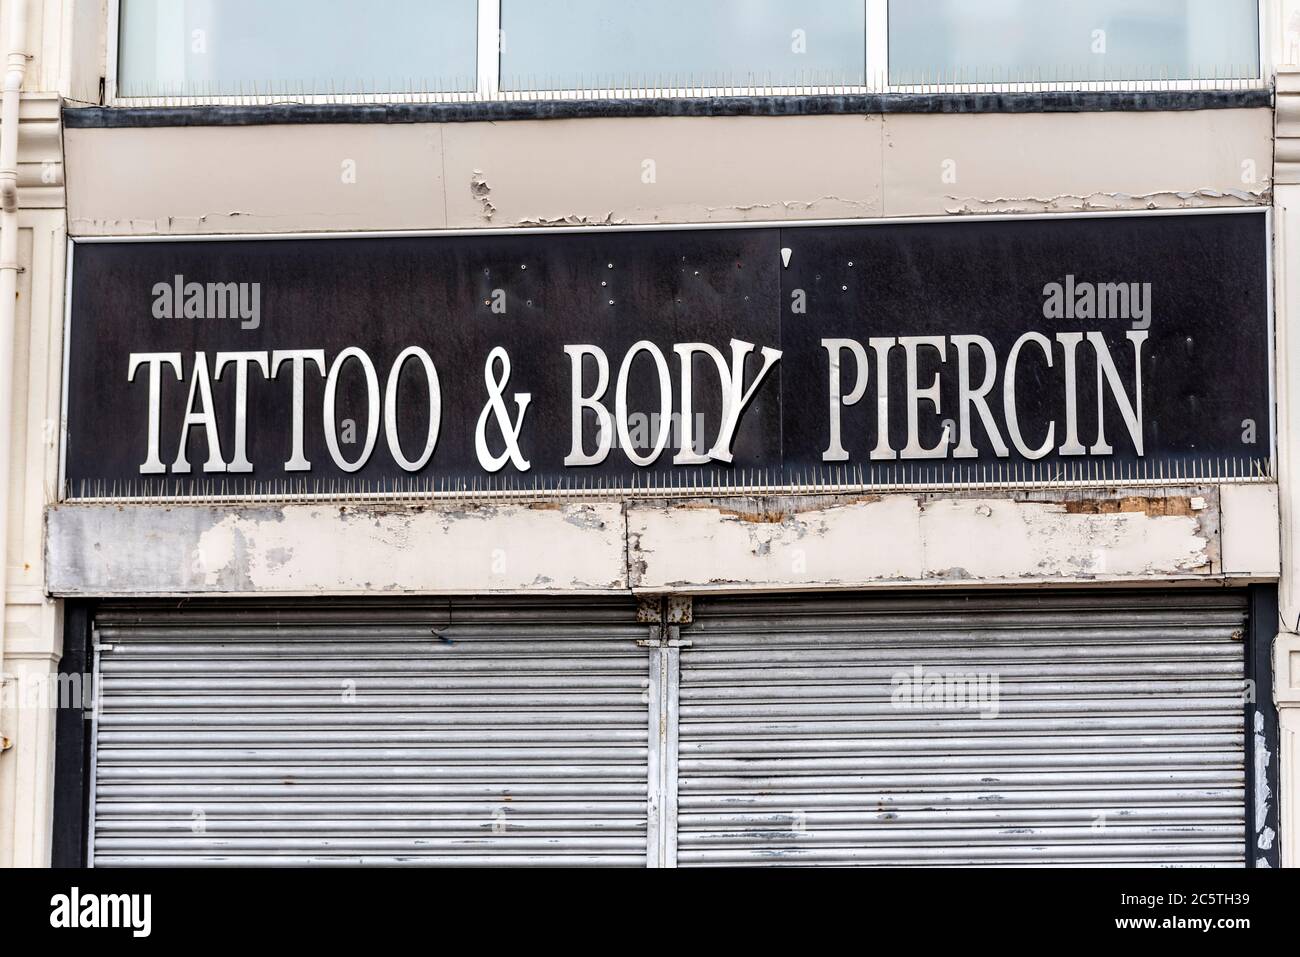 Negozio di tatuaggi e body piercing a Southend on Sea, Essex, Regno Unito. Locali chiusi e chiusi con lettere in decomposizione, danneggiate e lettera mancante Foto Stock